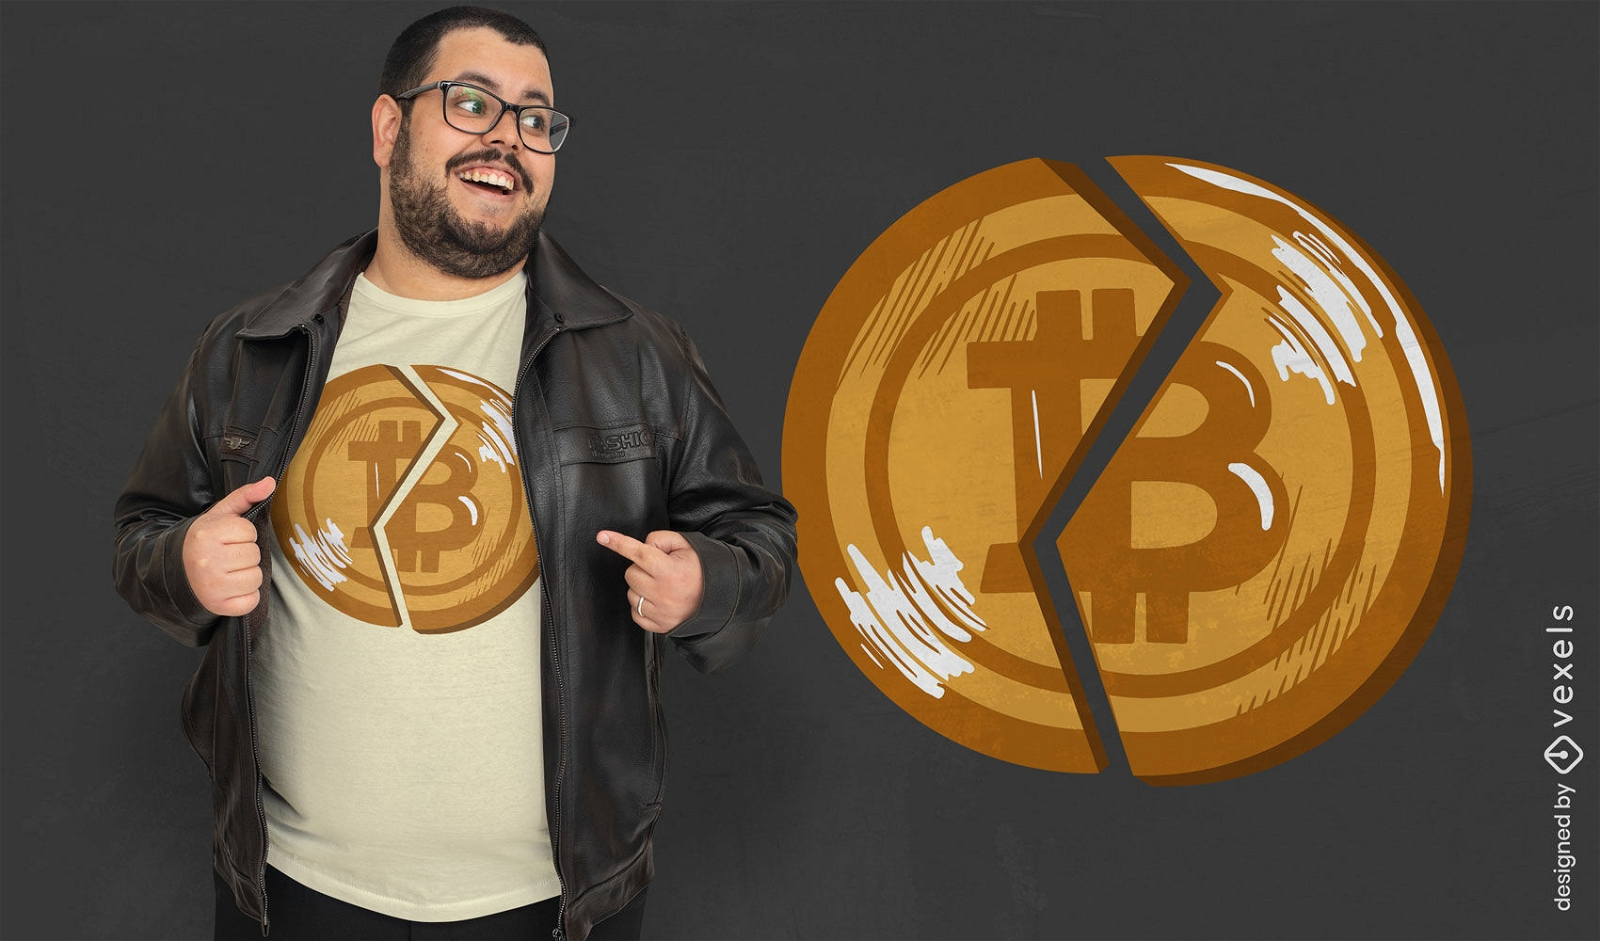 Dise?o de camiseta con emblema de bitcoin.